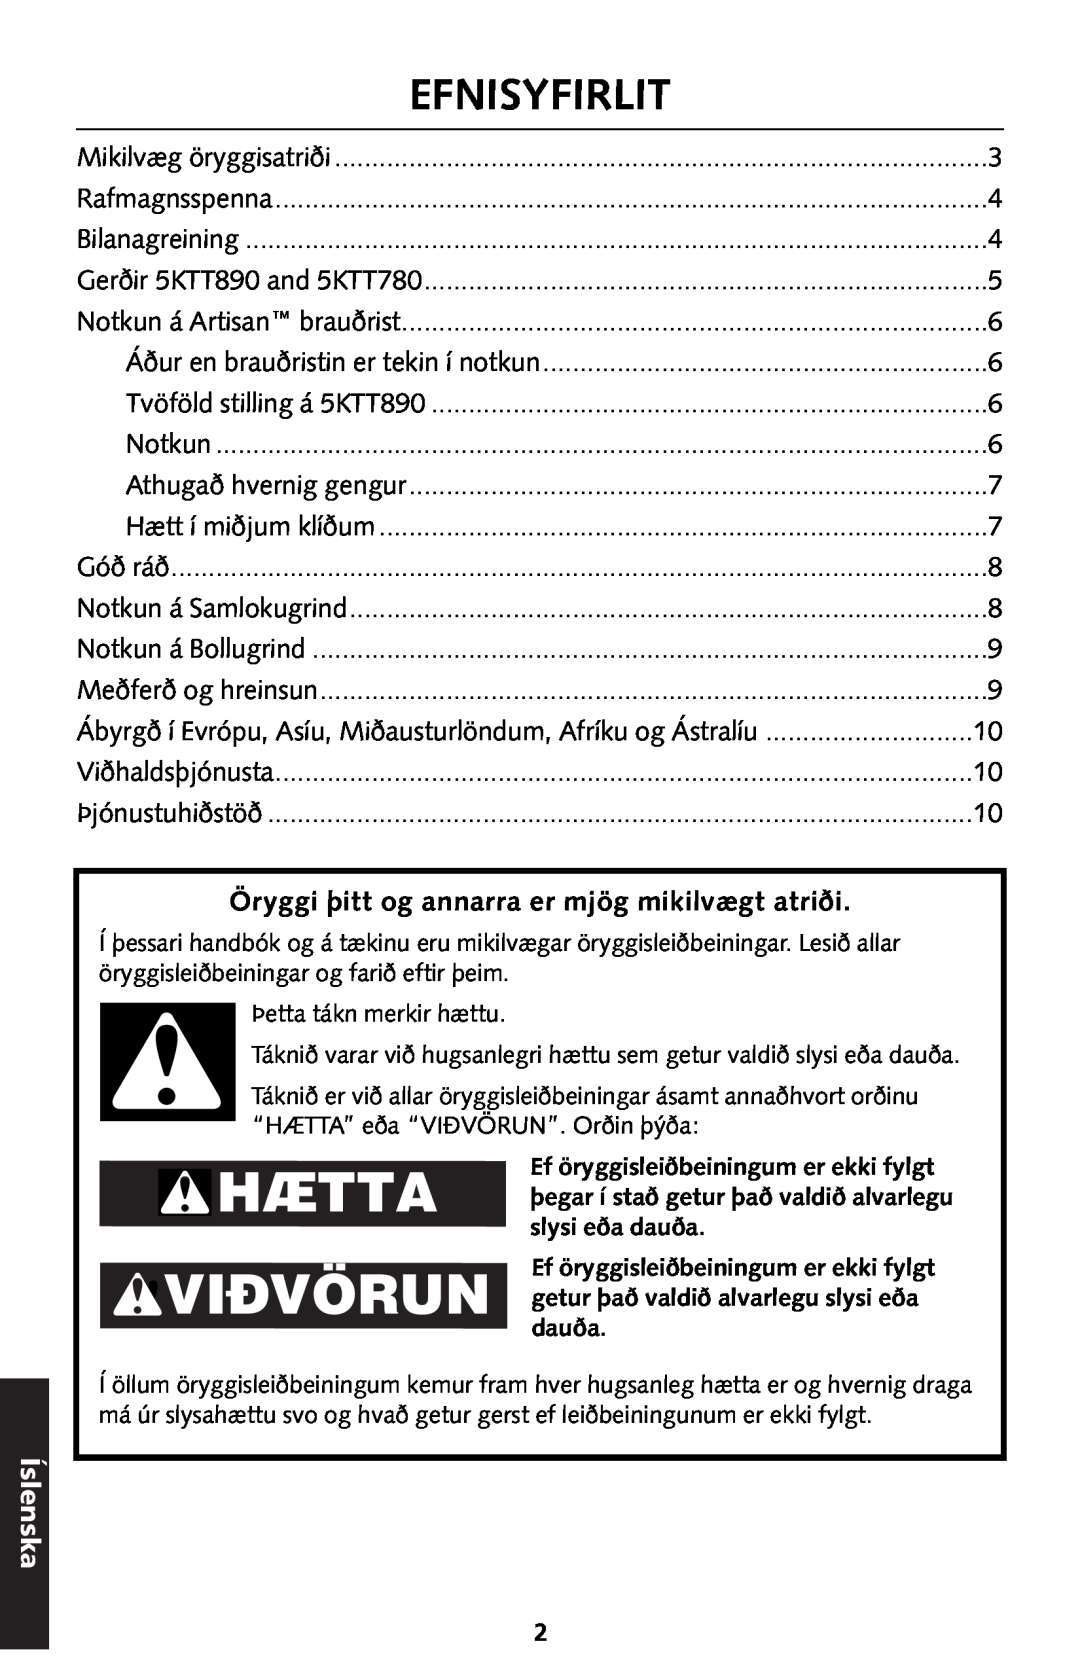 KitchenAid 5KTT890 manual Hætta Vidvörun, Efnisyfirlit, Íslenska 